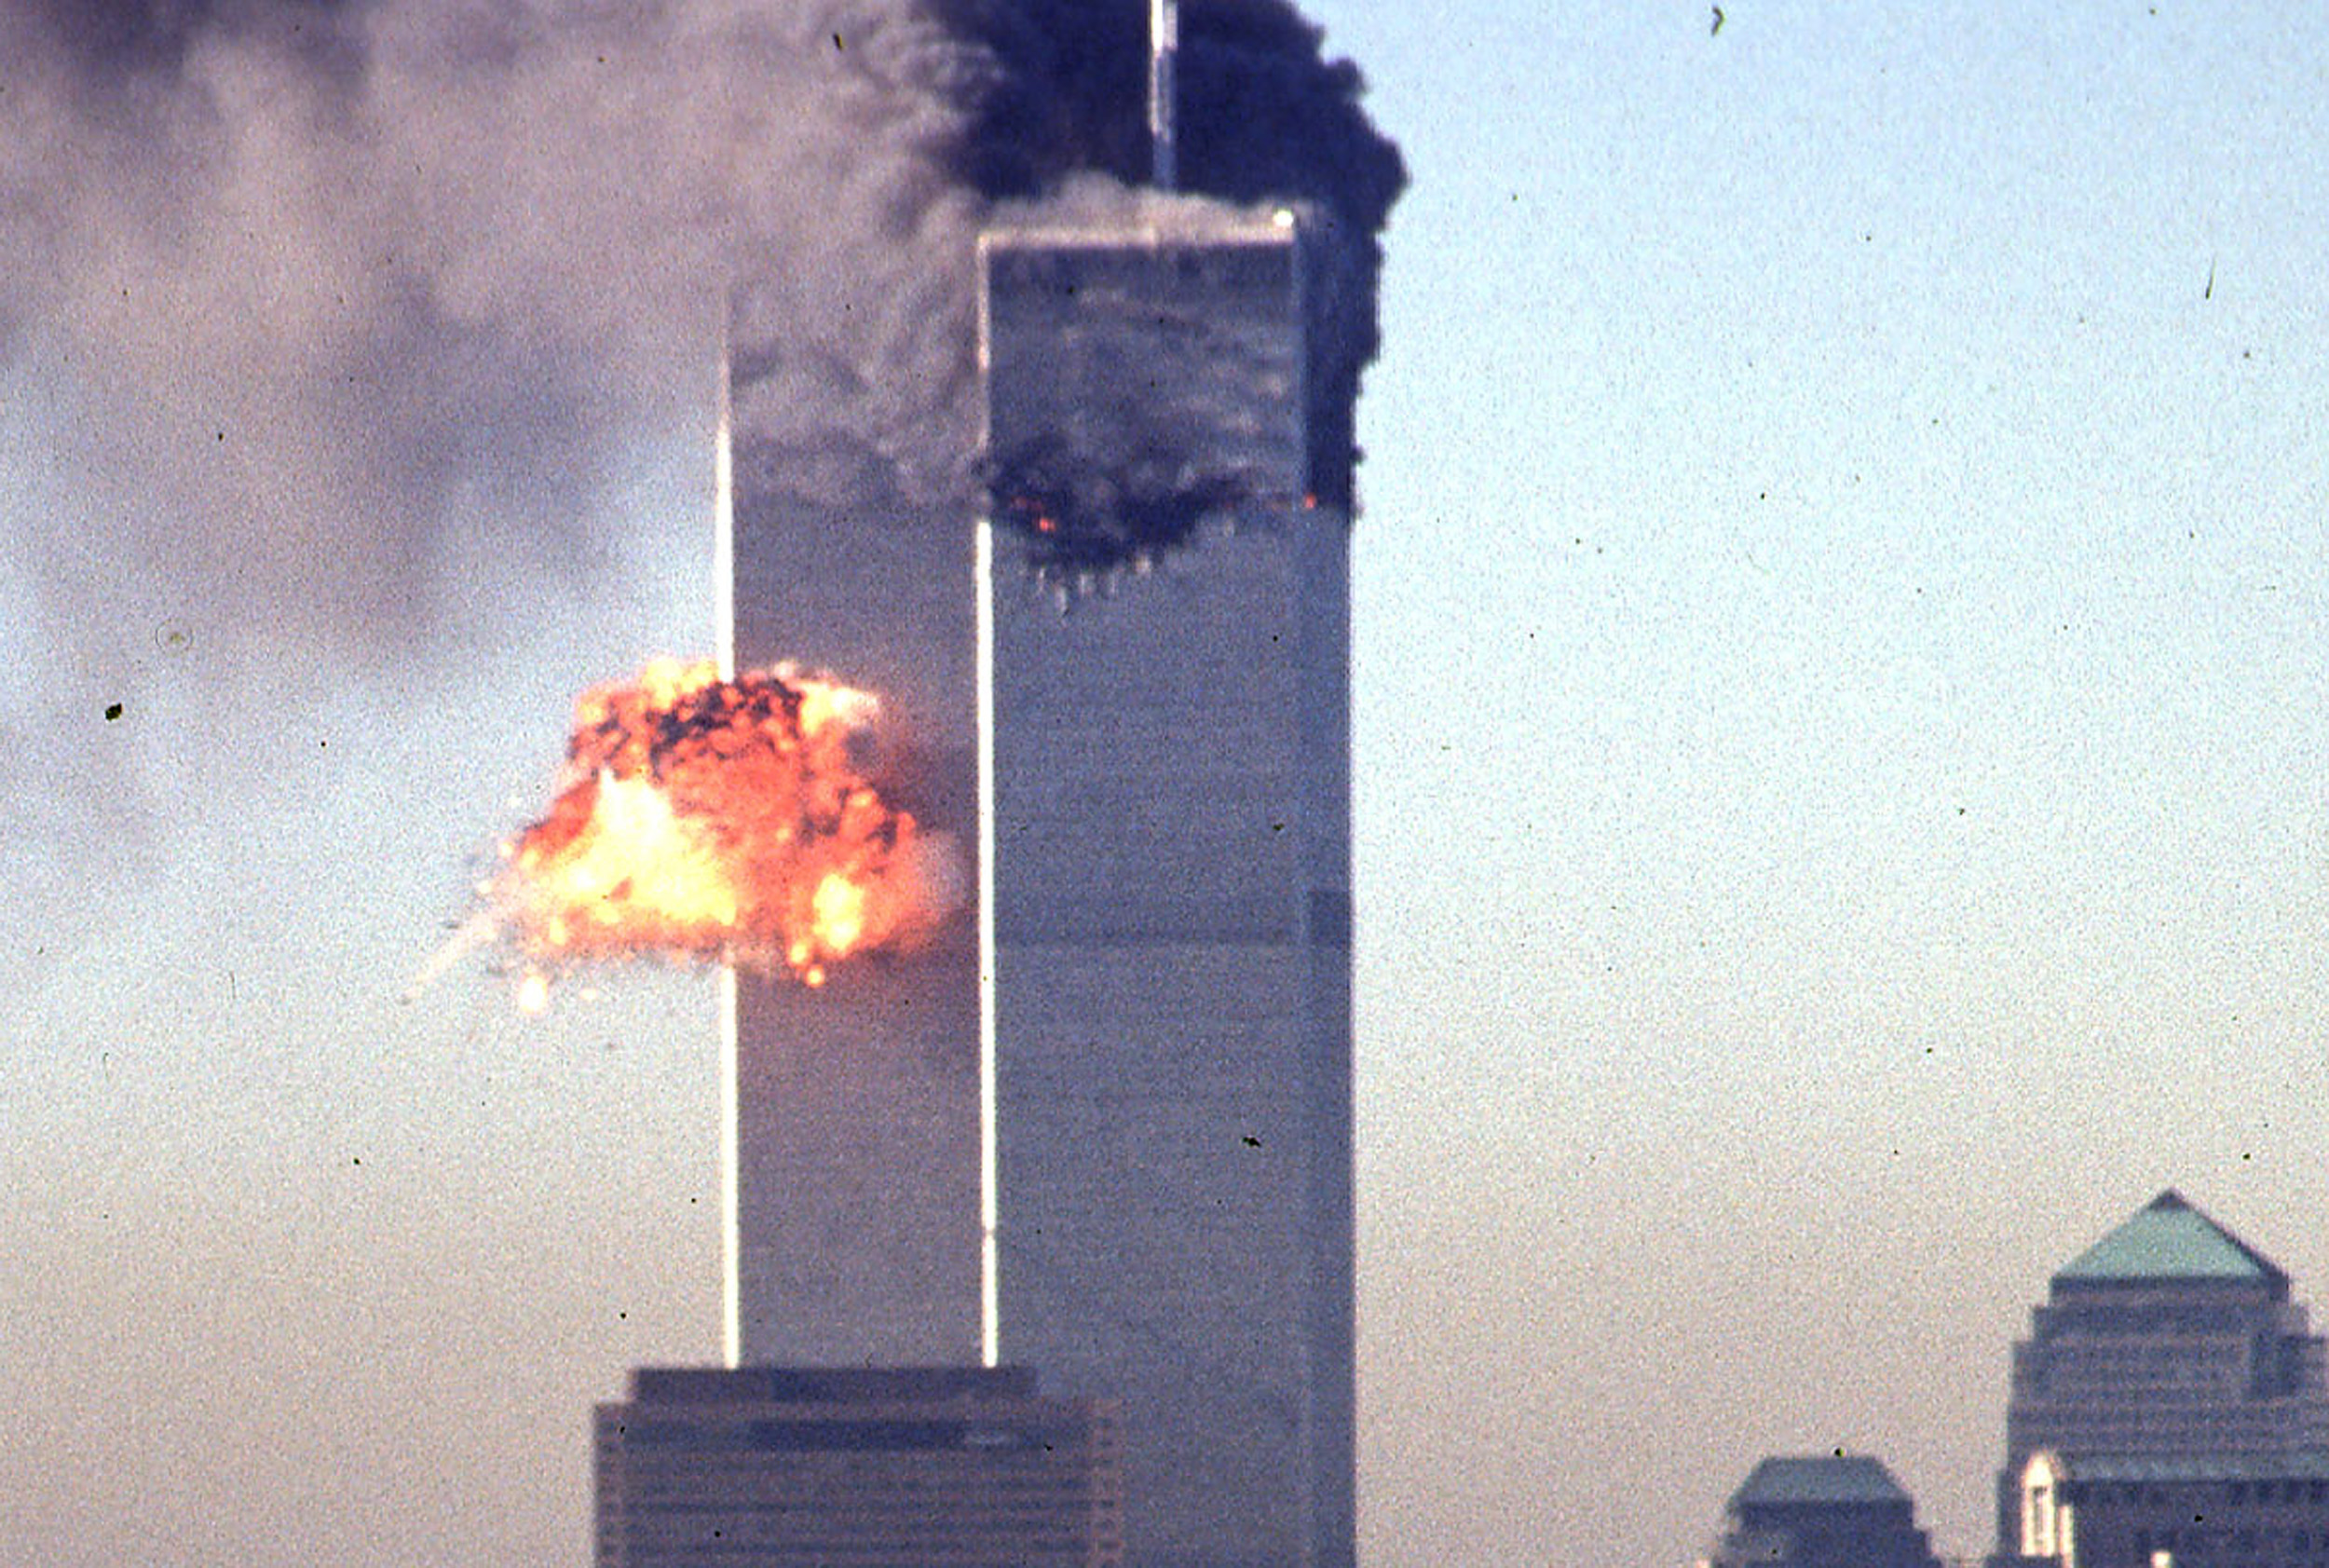 Нападение башен. Башни-Близнецы 11 сентября 2001. Аль Каида башни Близнецы. Башни ВТЦ 11 сентября 2001.